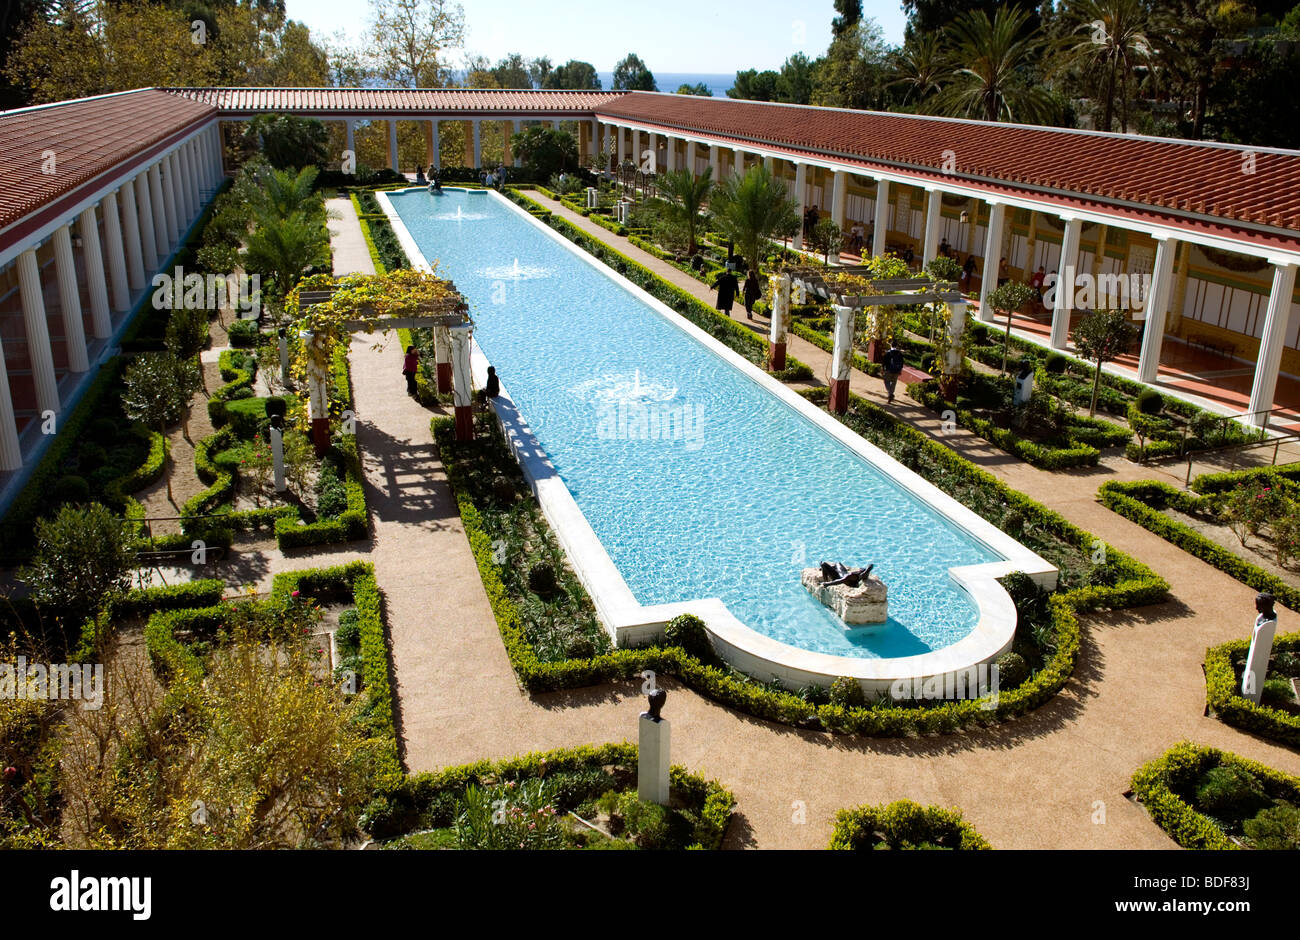 The Getty Villa in Malibu Stock Photo